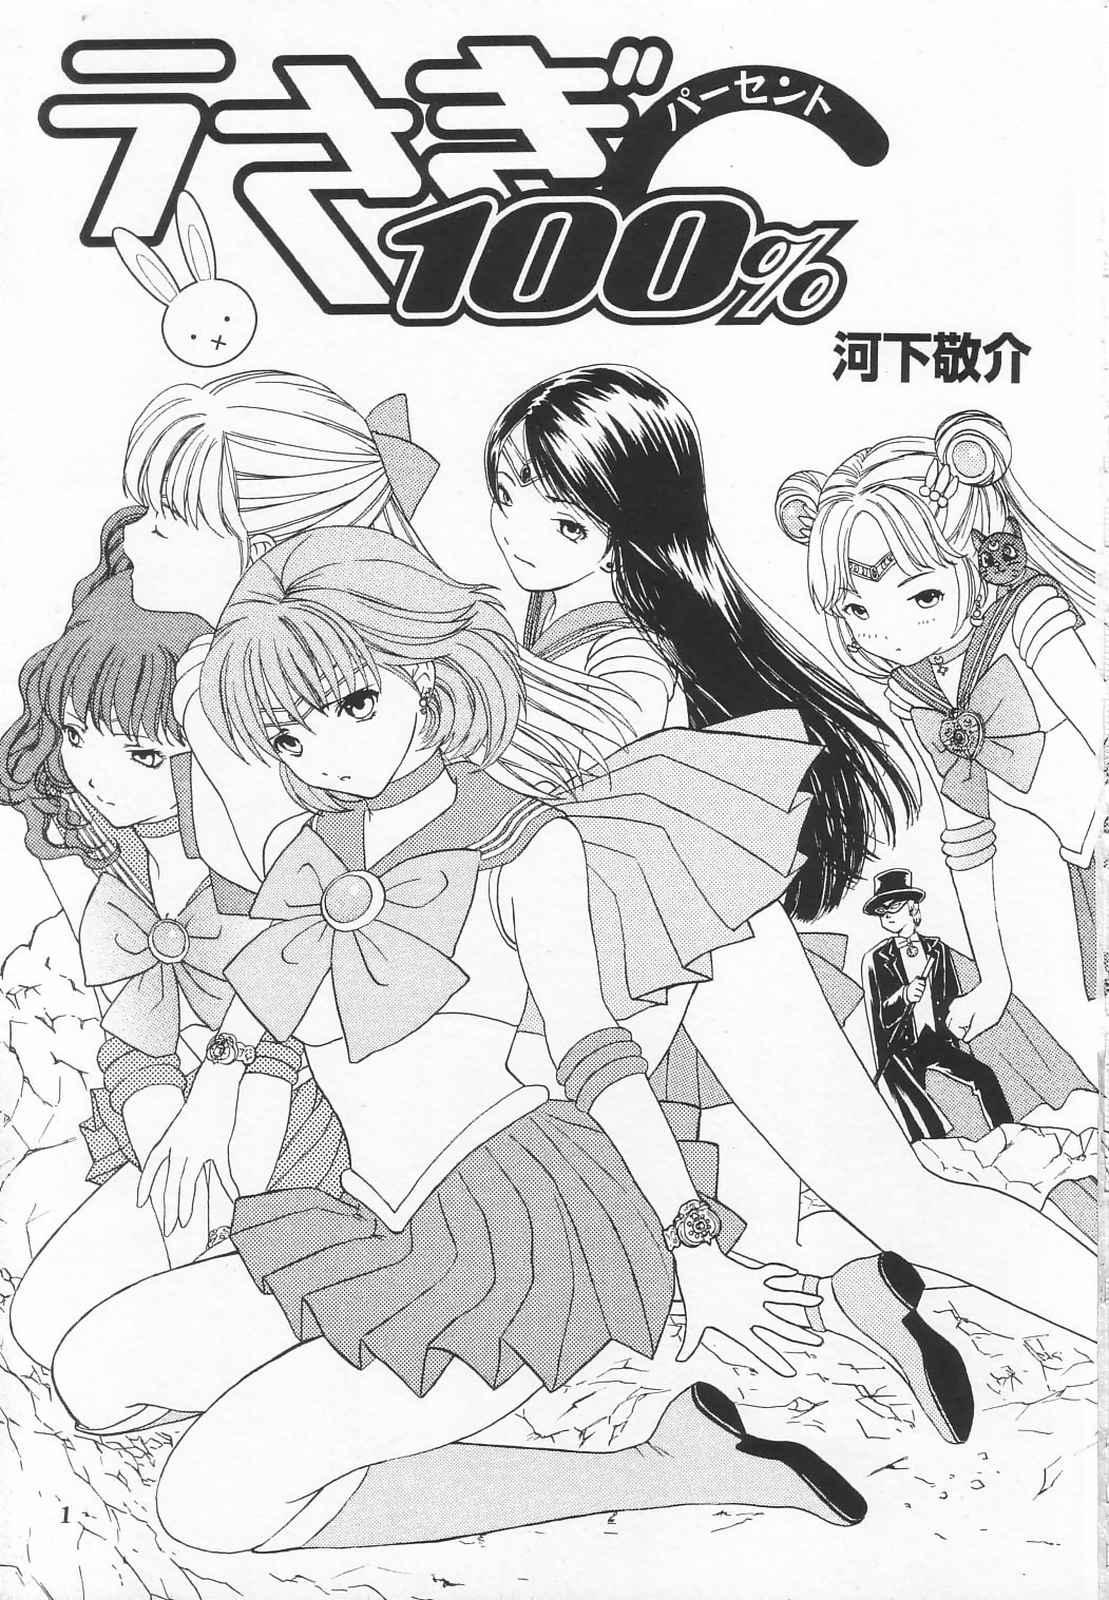 Gay 3some Tokusatsu Magazine x 2003 Fuyu Gou - Sailor moon Ichigo 100 Flash - Page 3